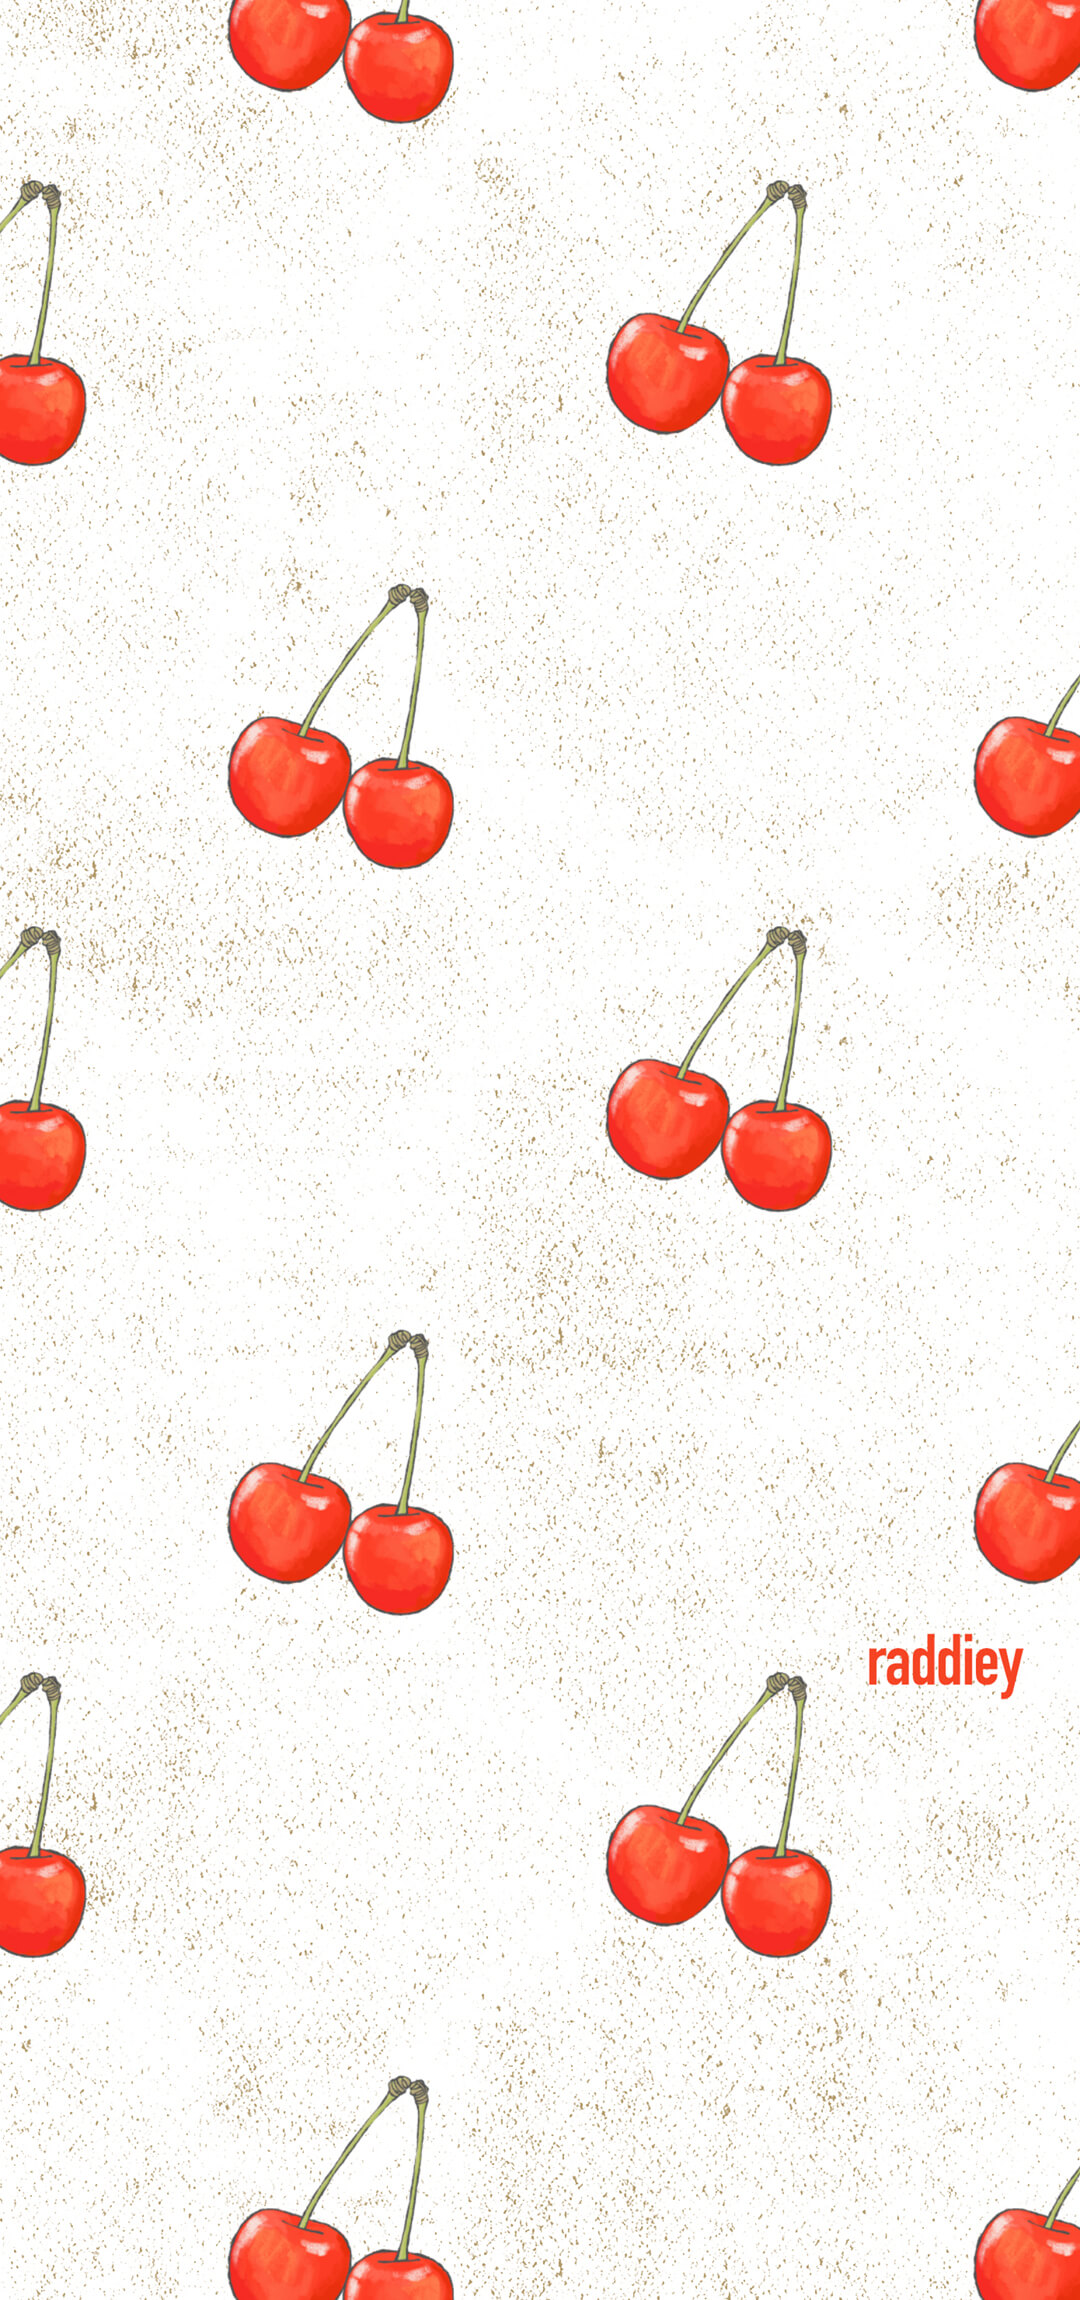 さくらんぼのパターンのスマホ用壁紙 Raddiey Free イラストレーターraddieyのフリー素材